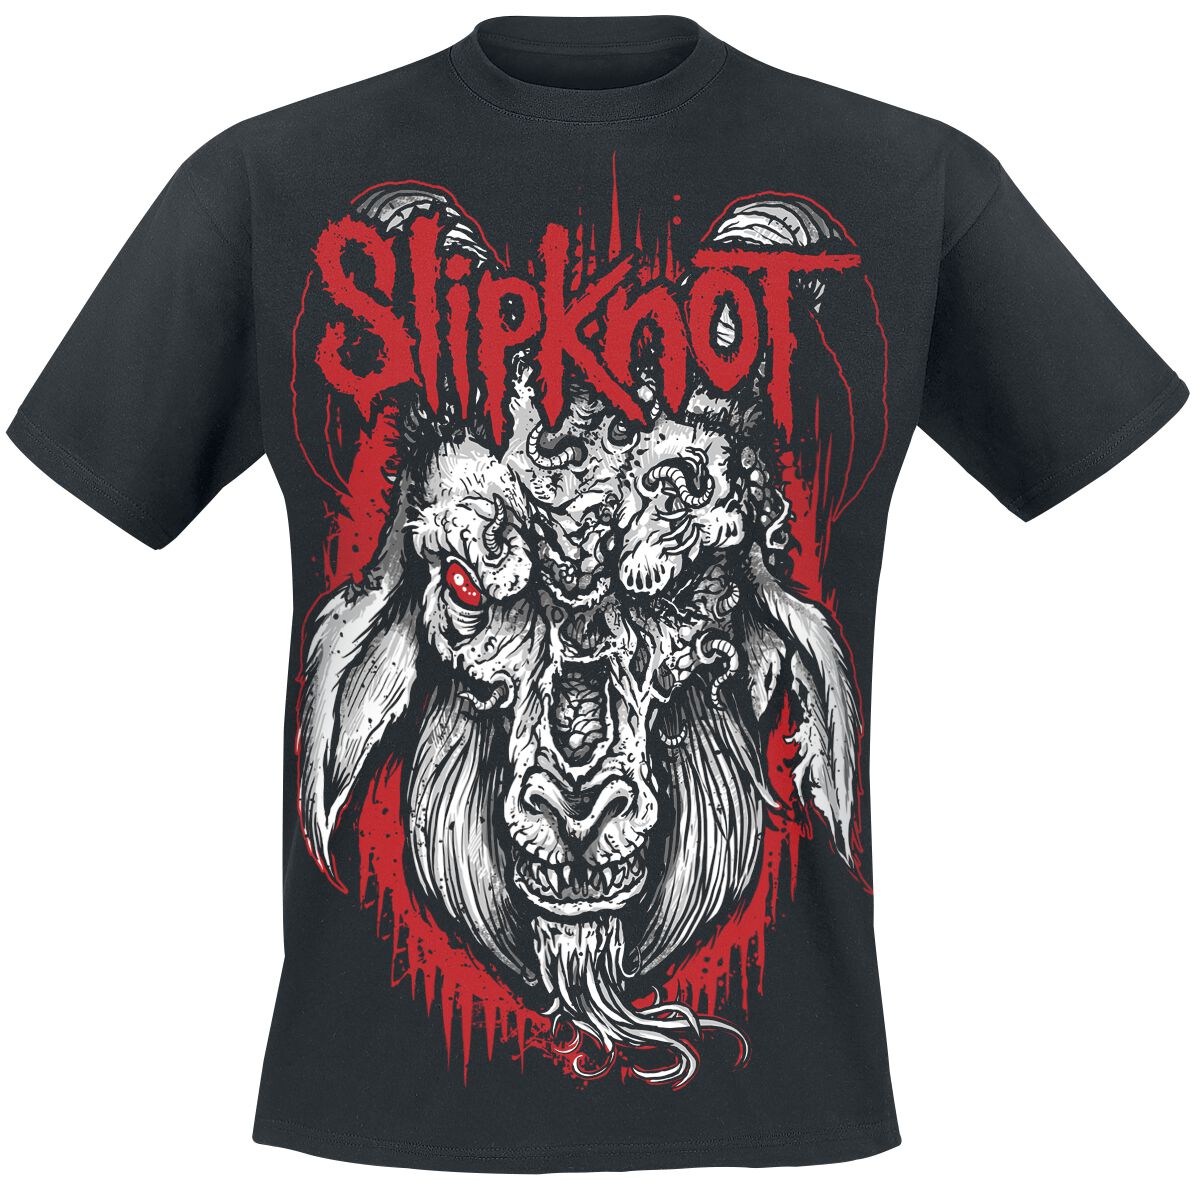 Slipknot T-Shirt - Rotting Goat - S bis 5XL - für Männer - Größe 3XL - schwarz  - Lizenziertes Merchandise!